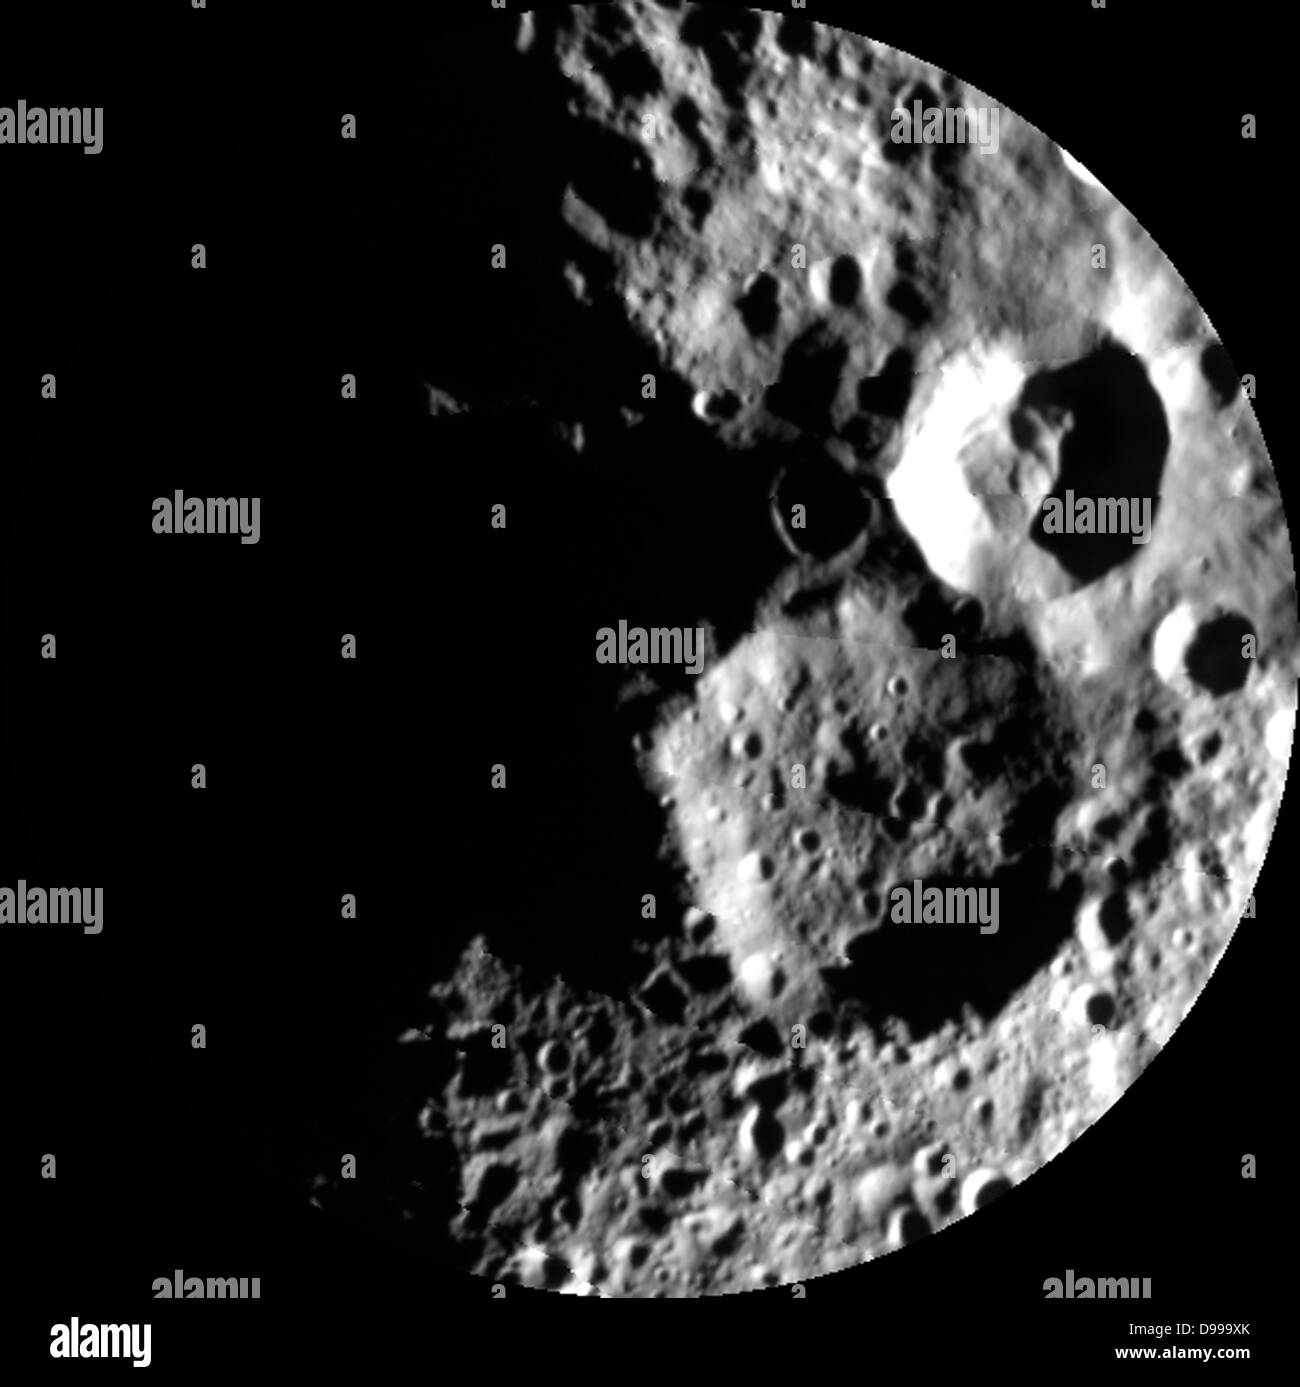 Cette image de l'aube de la NASA révèle la mission dawn rampant sur le pôle nord de l'astéroïde géant Vesta maintenant que le soleil brille sur cette zone. La mosaïque est composée de 5 images obtenues par la caméra de cadrage de Dawn sur Aug.26, 2012, alors que l'aube était à une altitude d'environ 4 000 milles (6 000 kilomètres). Pôle nord de l'aube est centré dans cette image et toujours dans le noir. La mosaïque montre deux grands cratères d'impact, l'un relativement frais avec pas de petits impacts sur son étage et un deuxième plus grand et plus un avec beaucoup de petits impacts sur son sol. Banque D'Images